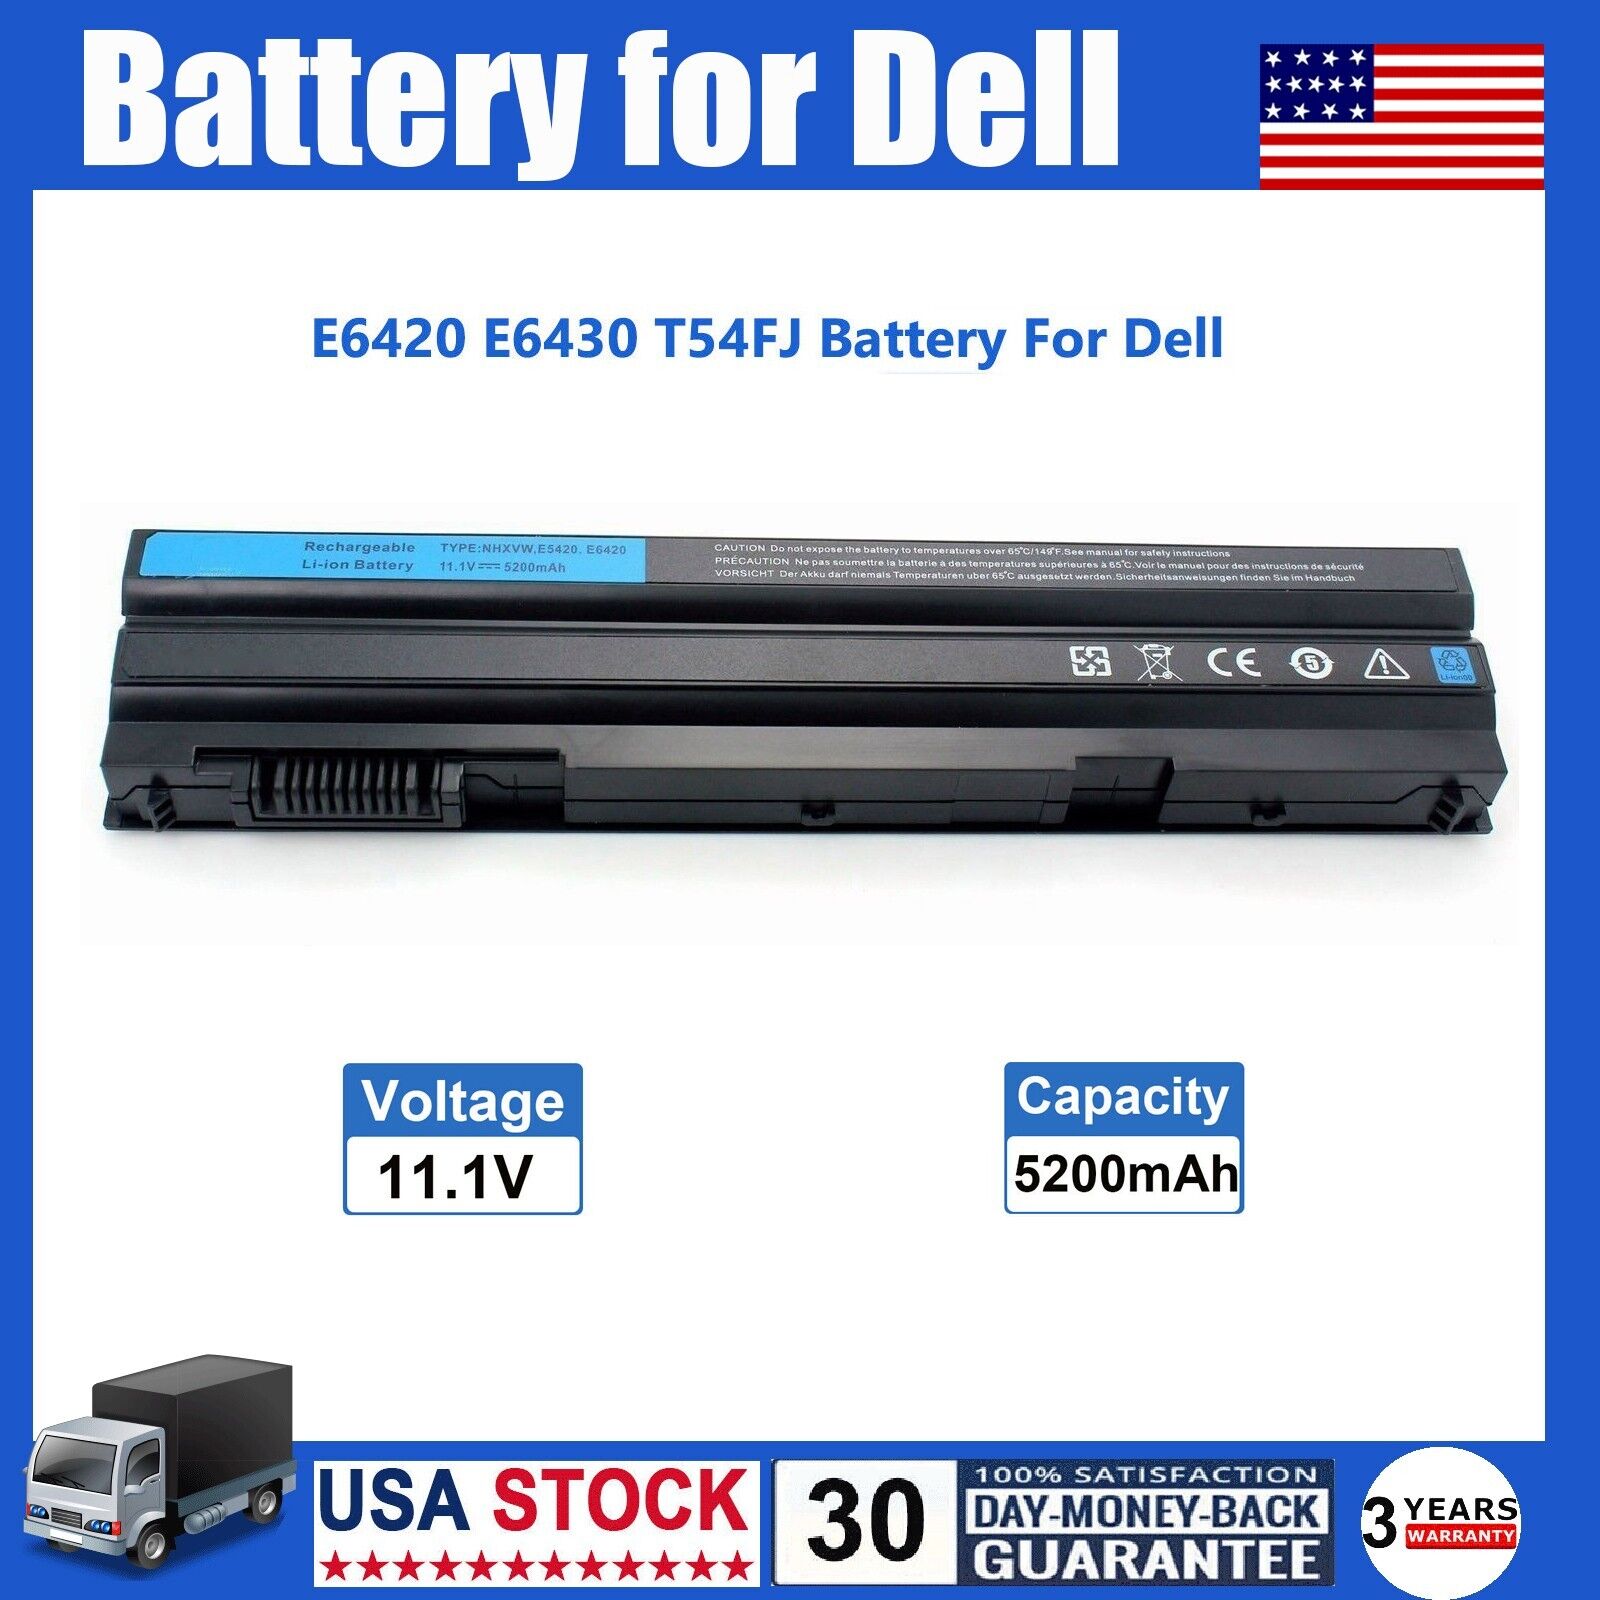 E6420 Battery for Dell Latitude E5430 E5520 E5530 E6430 E6440 E6520 E6540 T54FJ